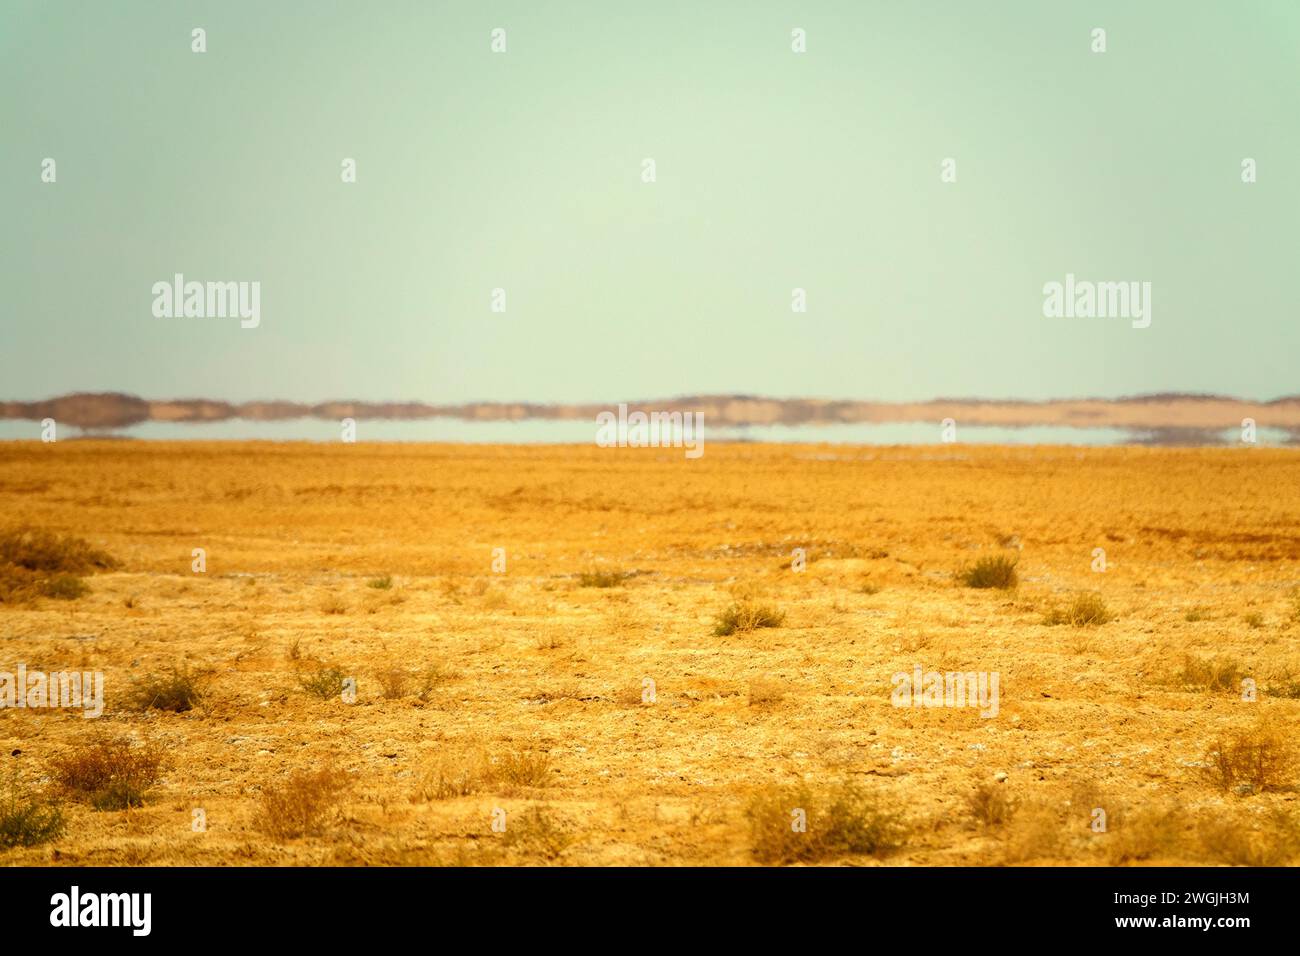 Deserti dell'Iran centrale (altopiano iraniano) in inverno. Deshte-Kevir - deserto salino con takyr argillosi. Appezzamento di deserto sabbioso-argilloso con arbusti sparsi. Da Foto Stock